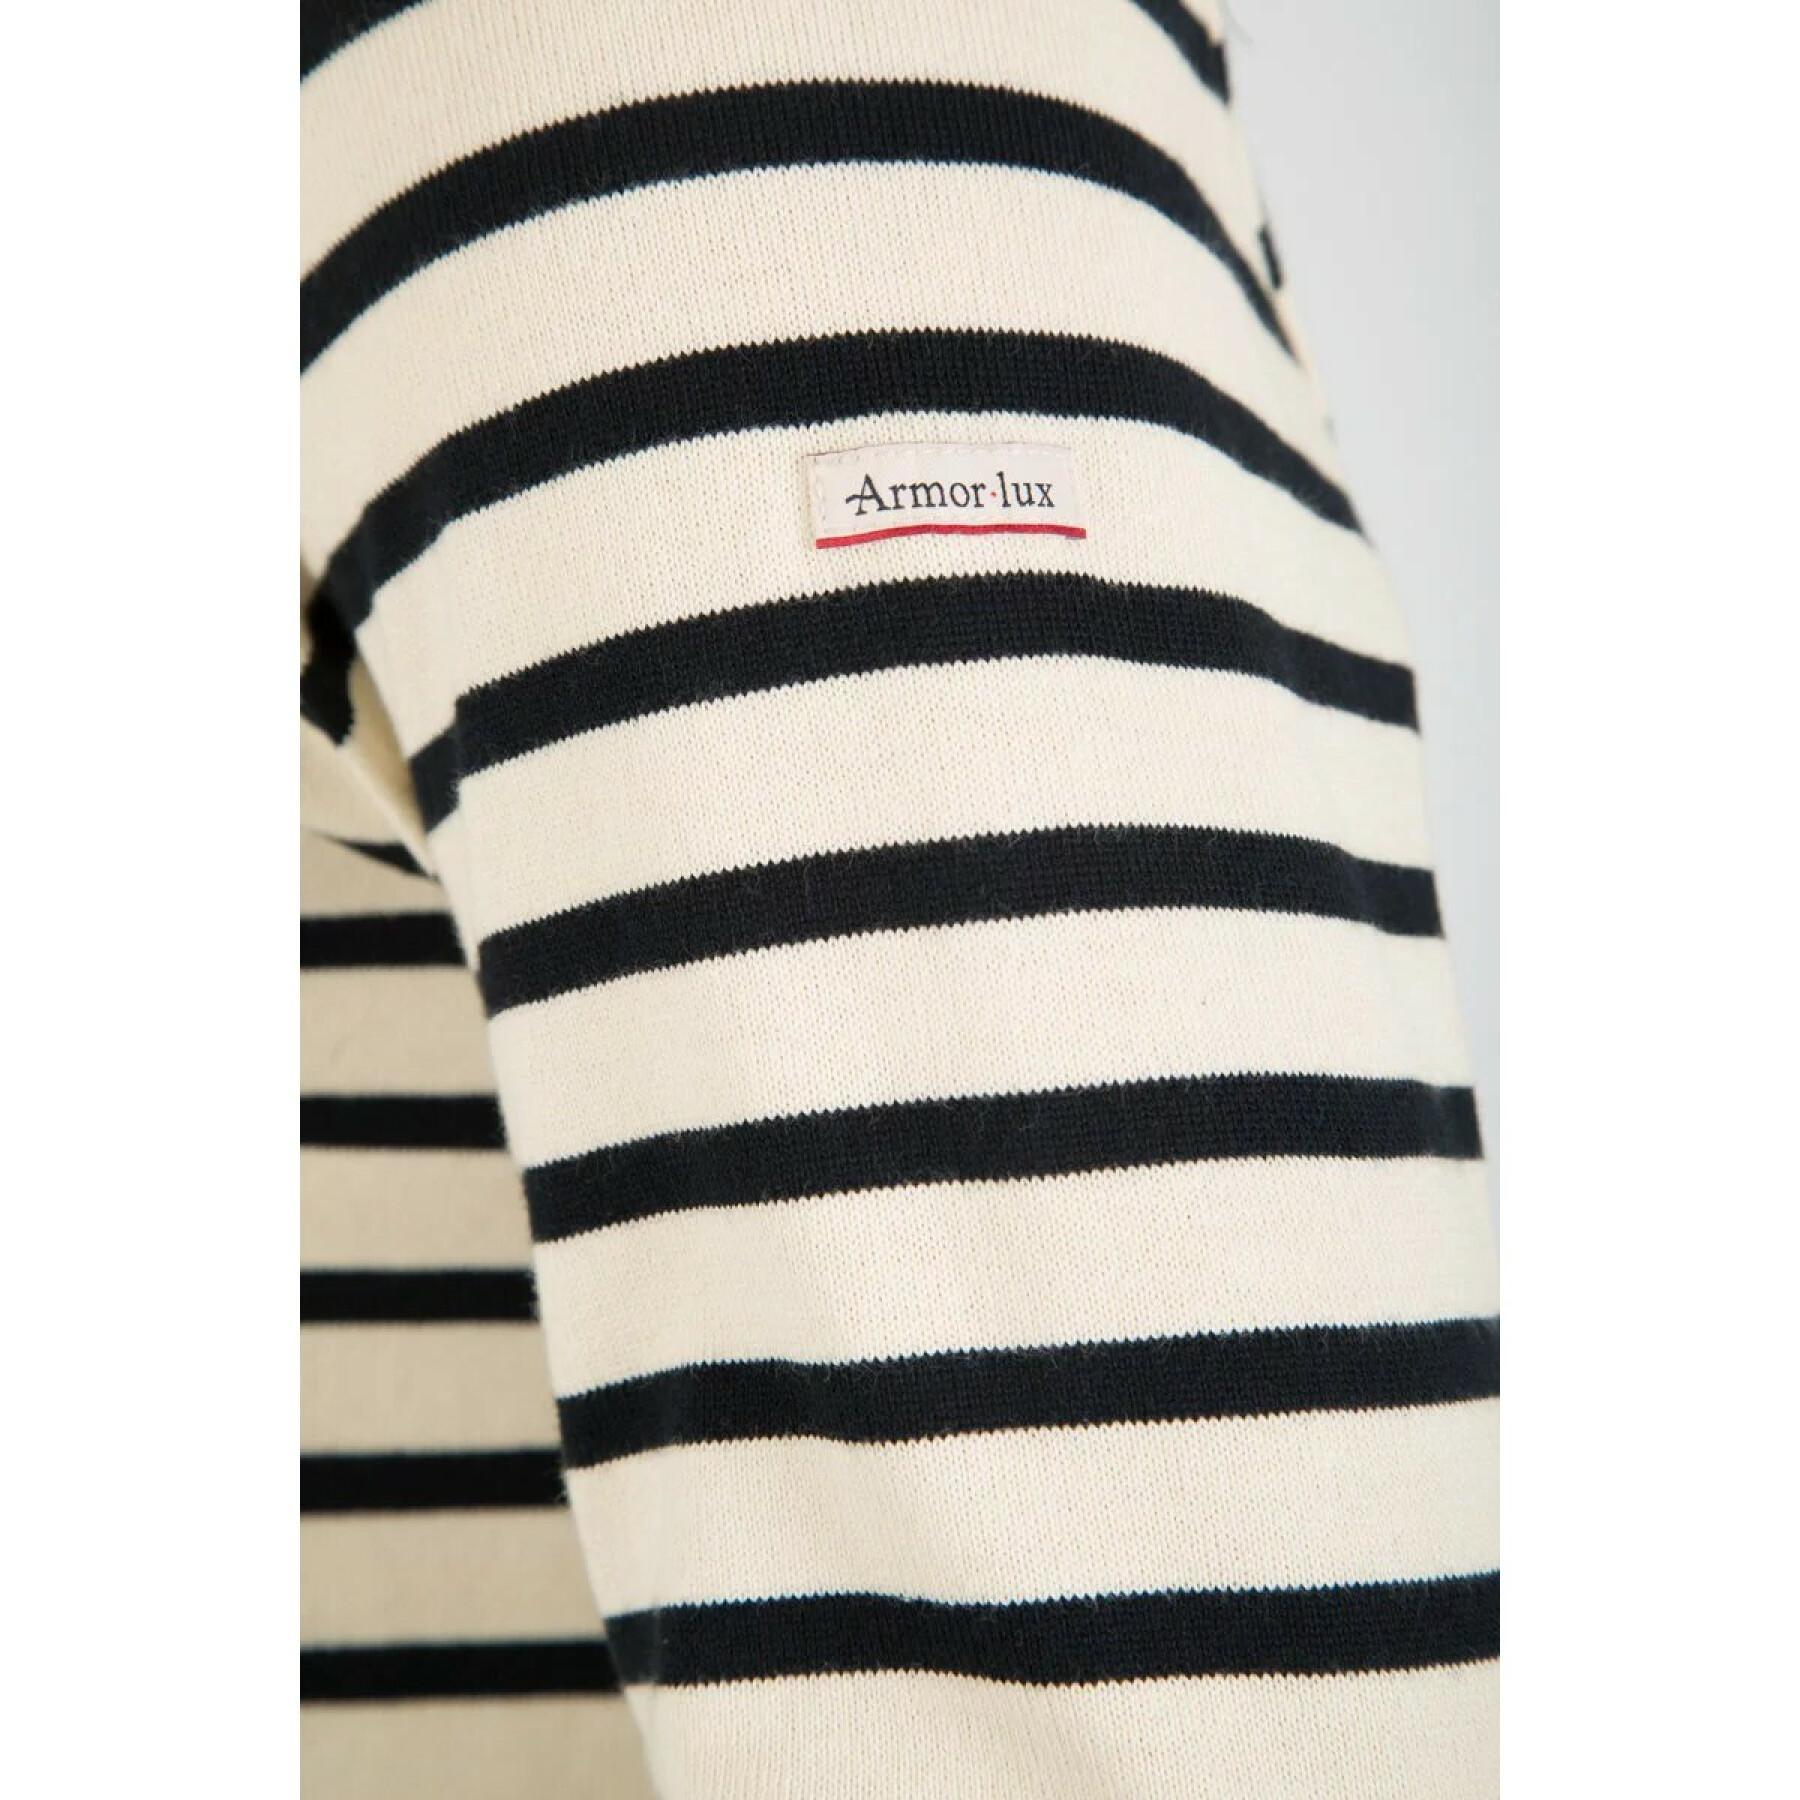 Camiseta marinière Armor-Lux aviron